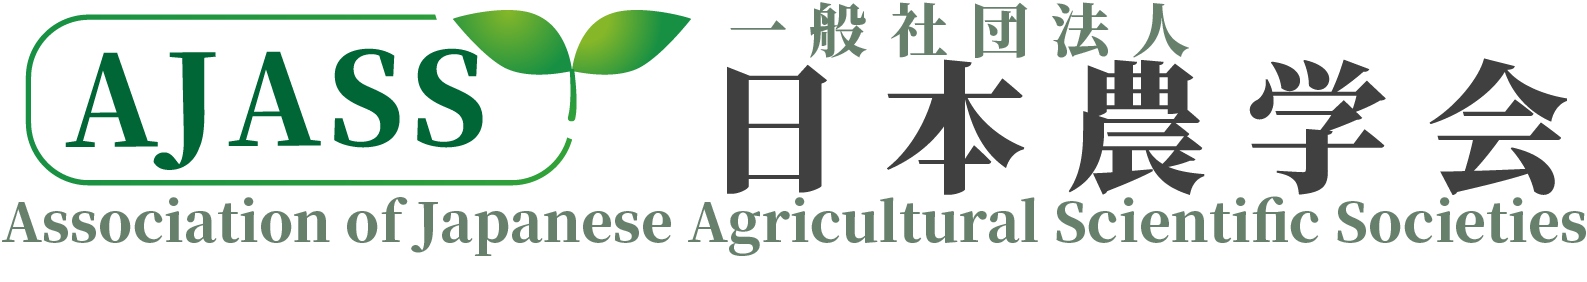 日本農学会 Association of Japanese Agricultural Scientific Societies